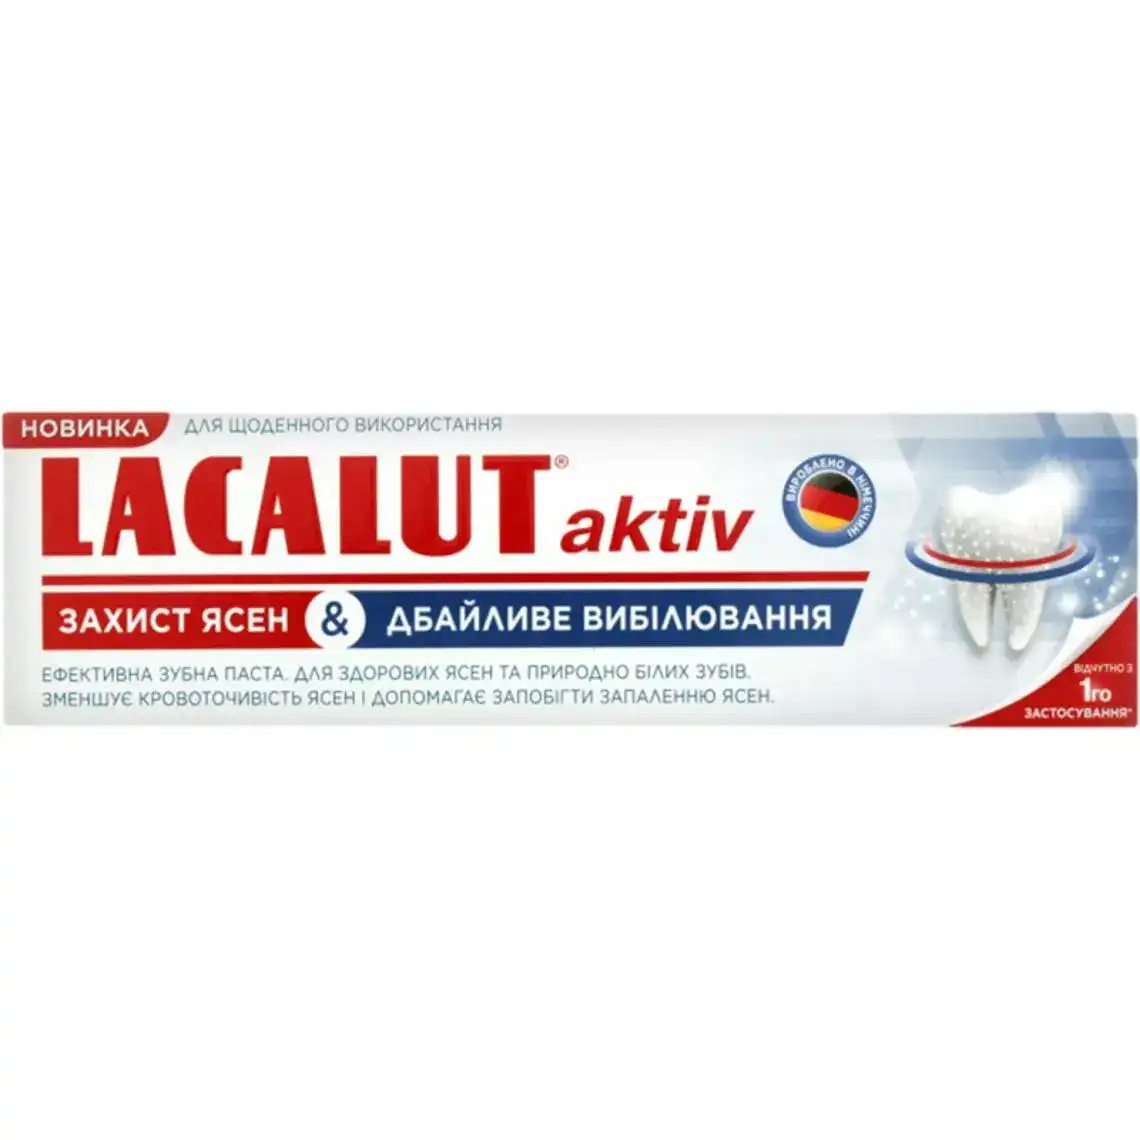 Фото 1 - Зубна паста Lacalut Aktiv Захист ясен & Дбайливе відбілювання 75 мл